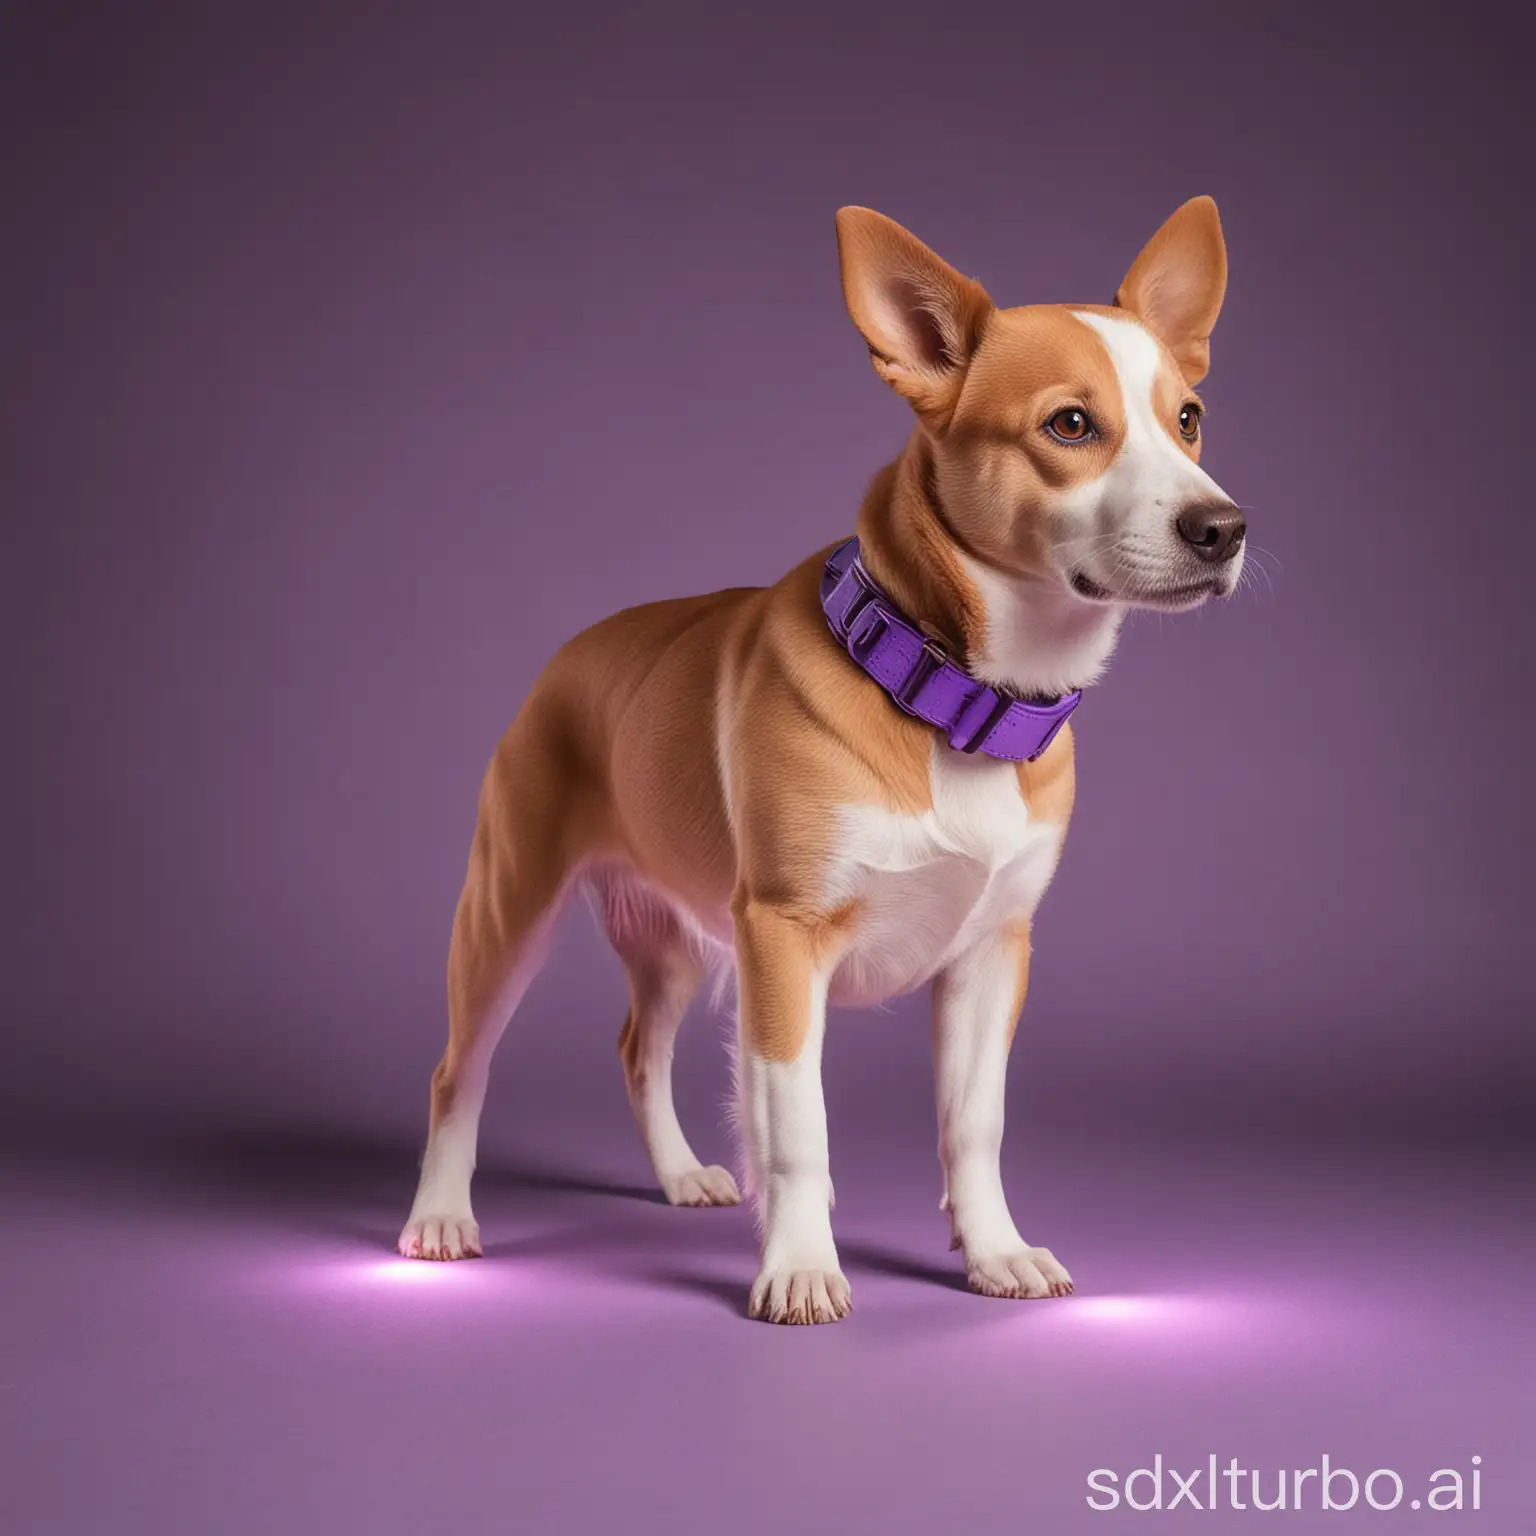 Vibrant-Instagram-Dog-Training-Session-in-Violet-Hues